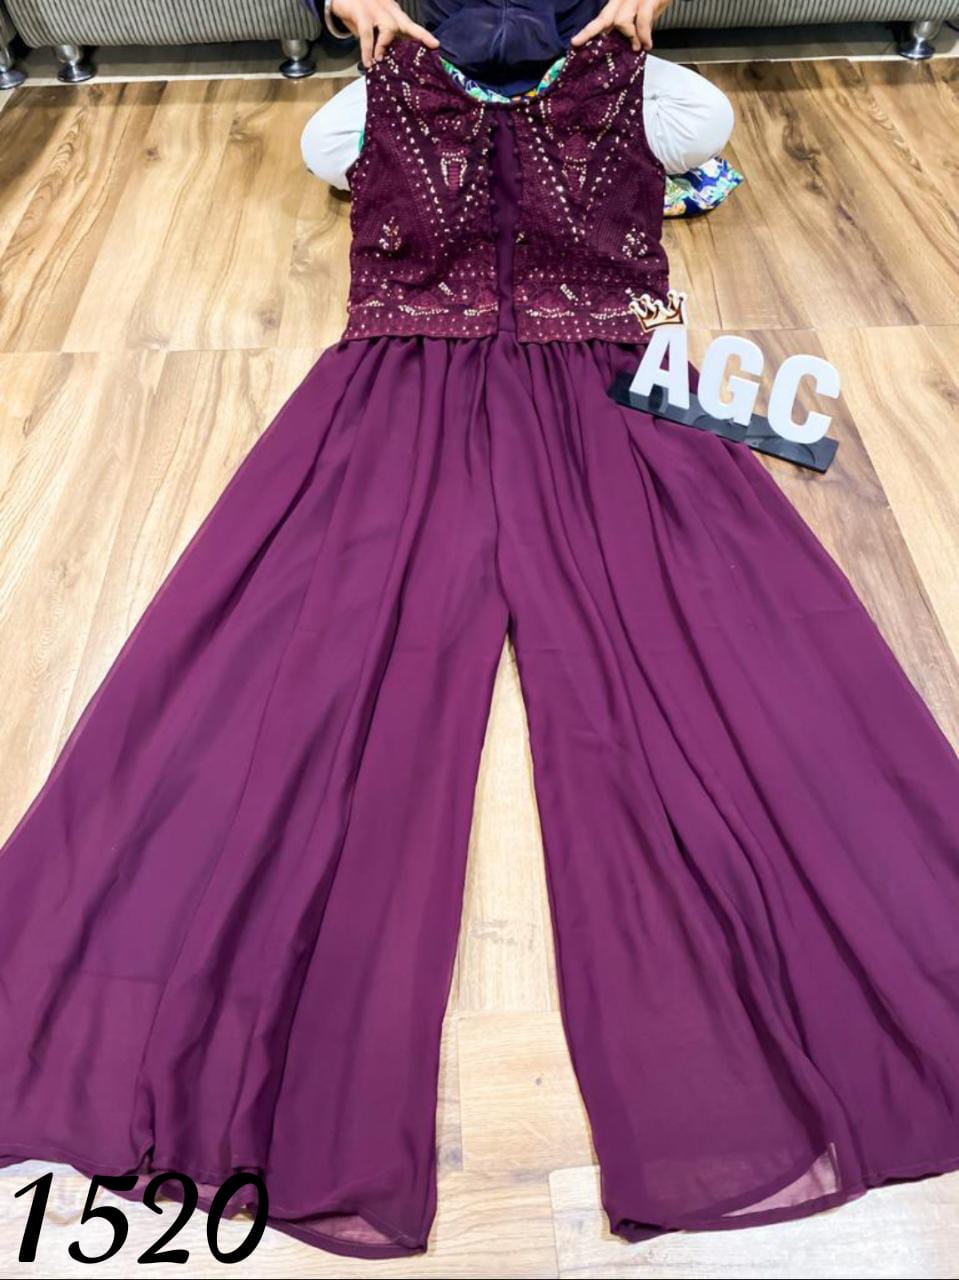 AGC collection: purple jumpsuit